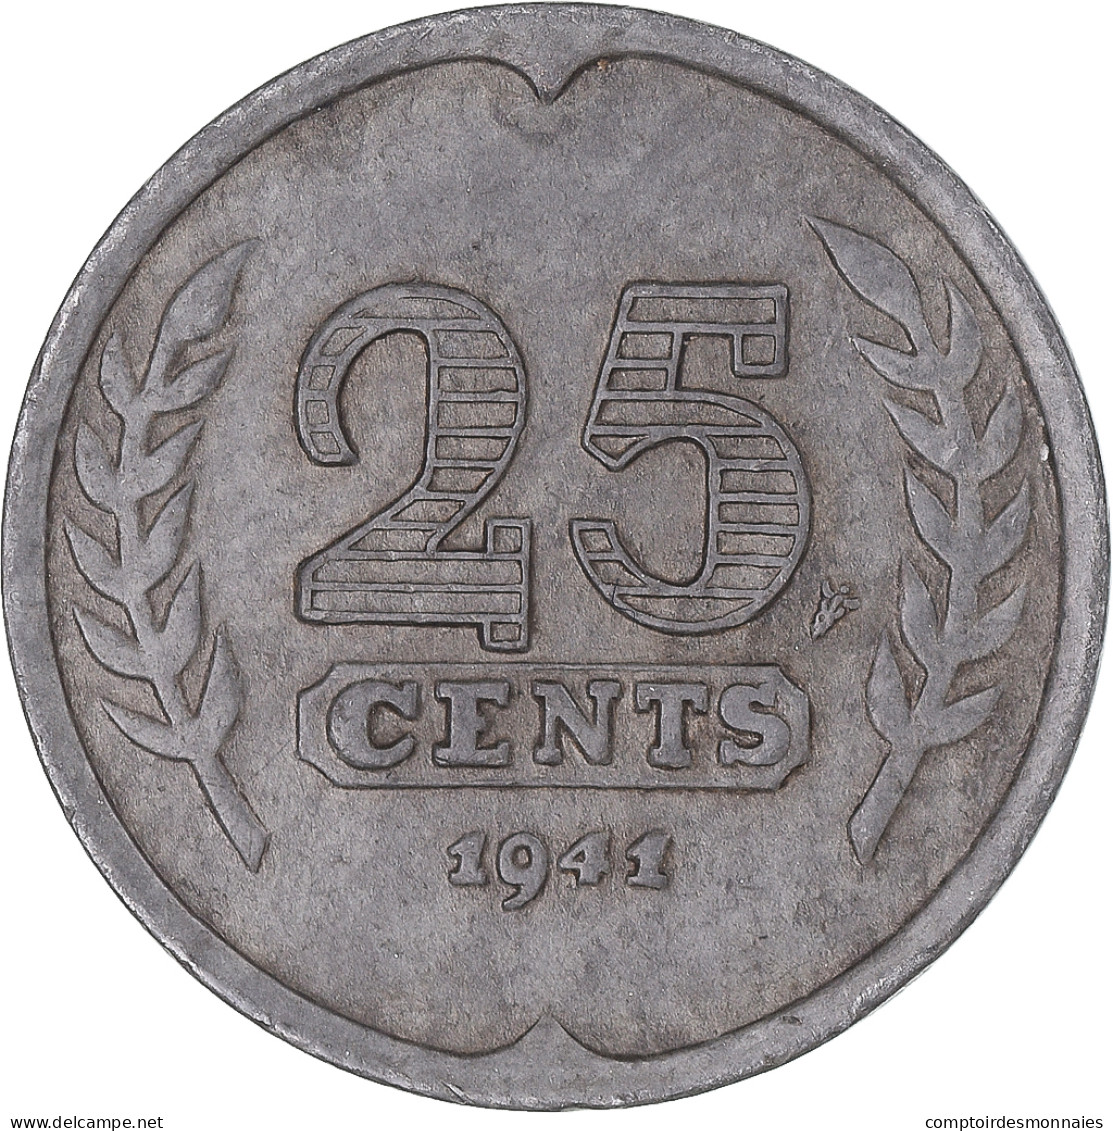 Monnaie, Pays-Bas, 25 Cents, 1941 - 25 Centavos